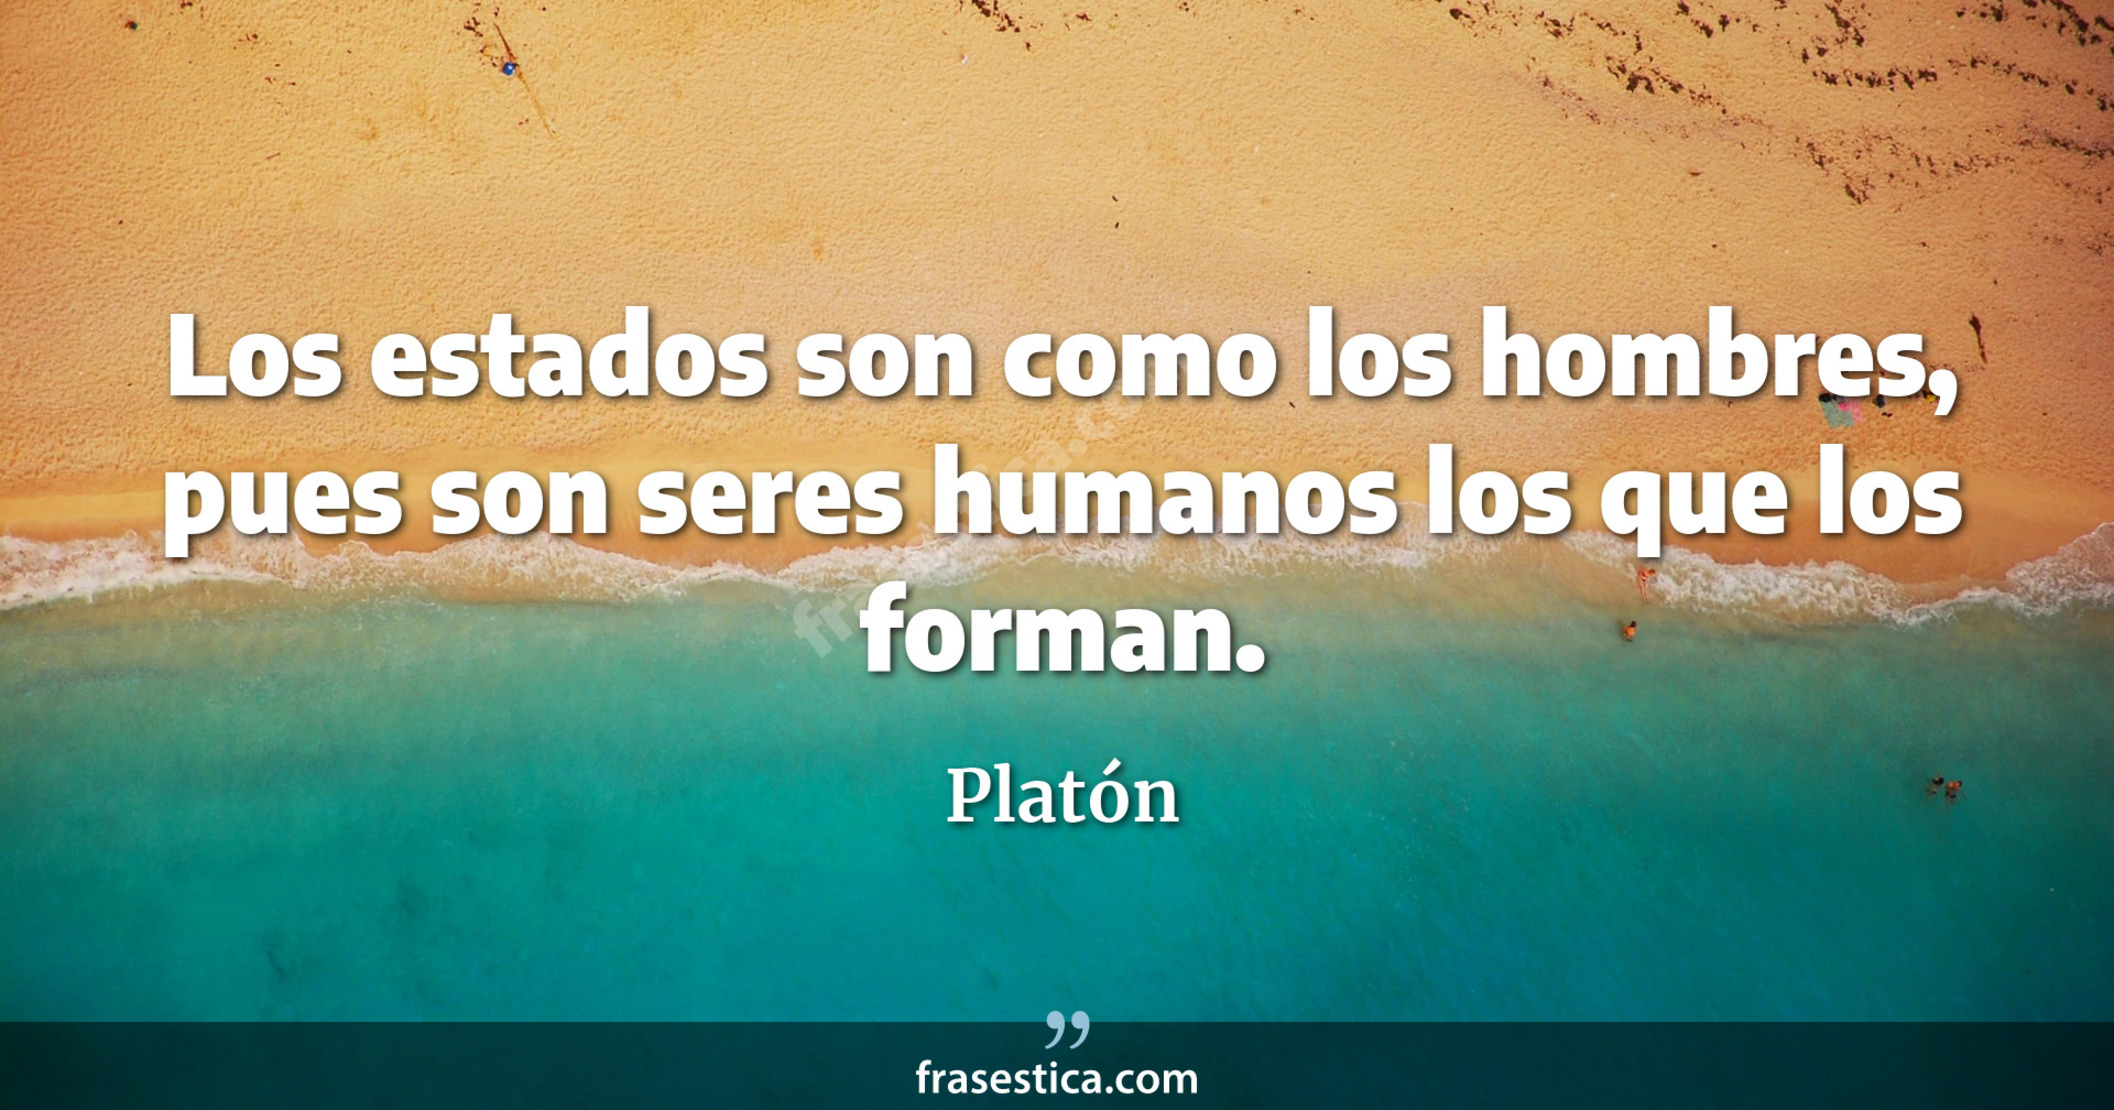 Los estados son como los hombres, pues son seres humanos los que los forman. - Platón